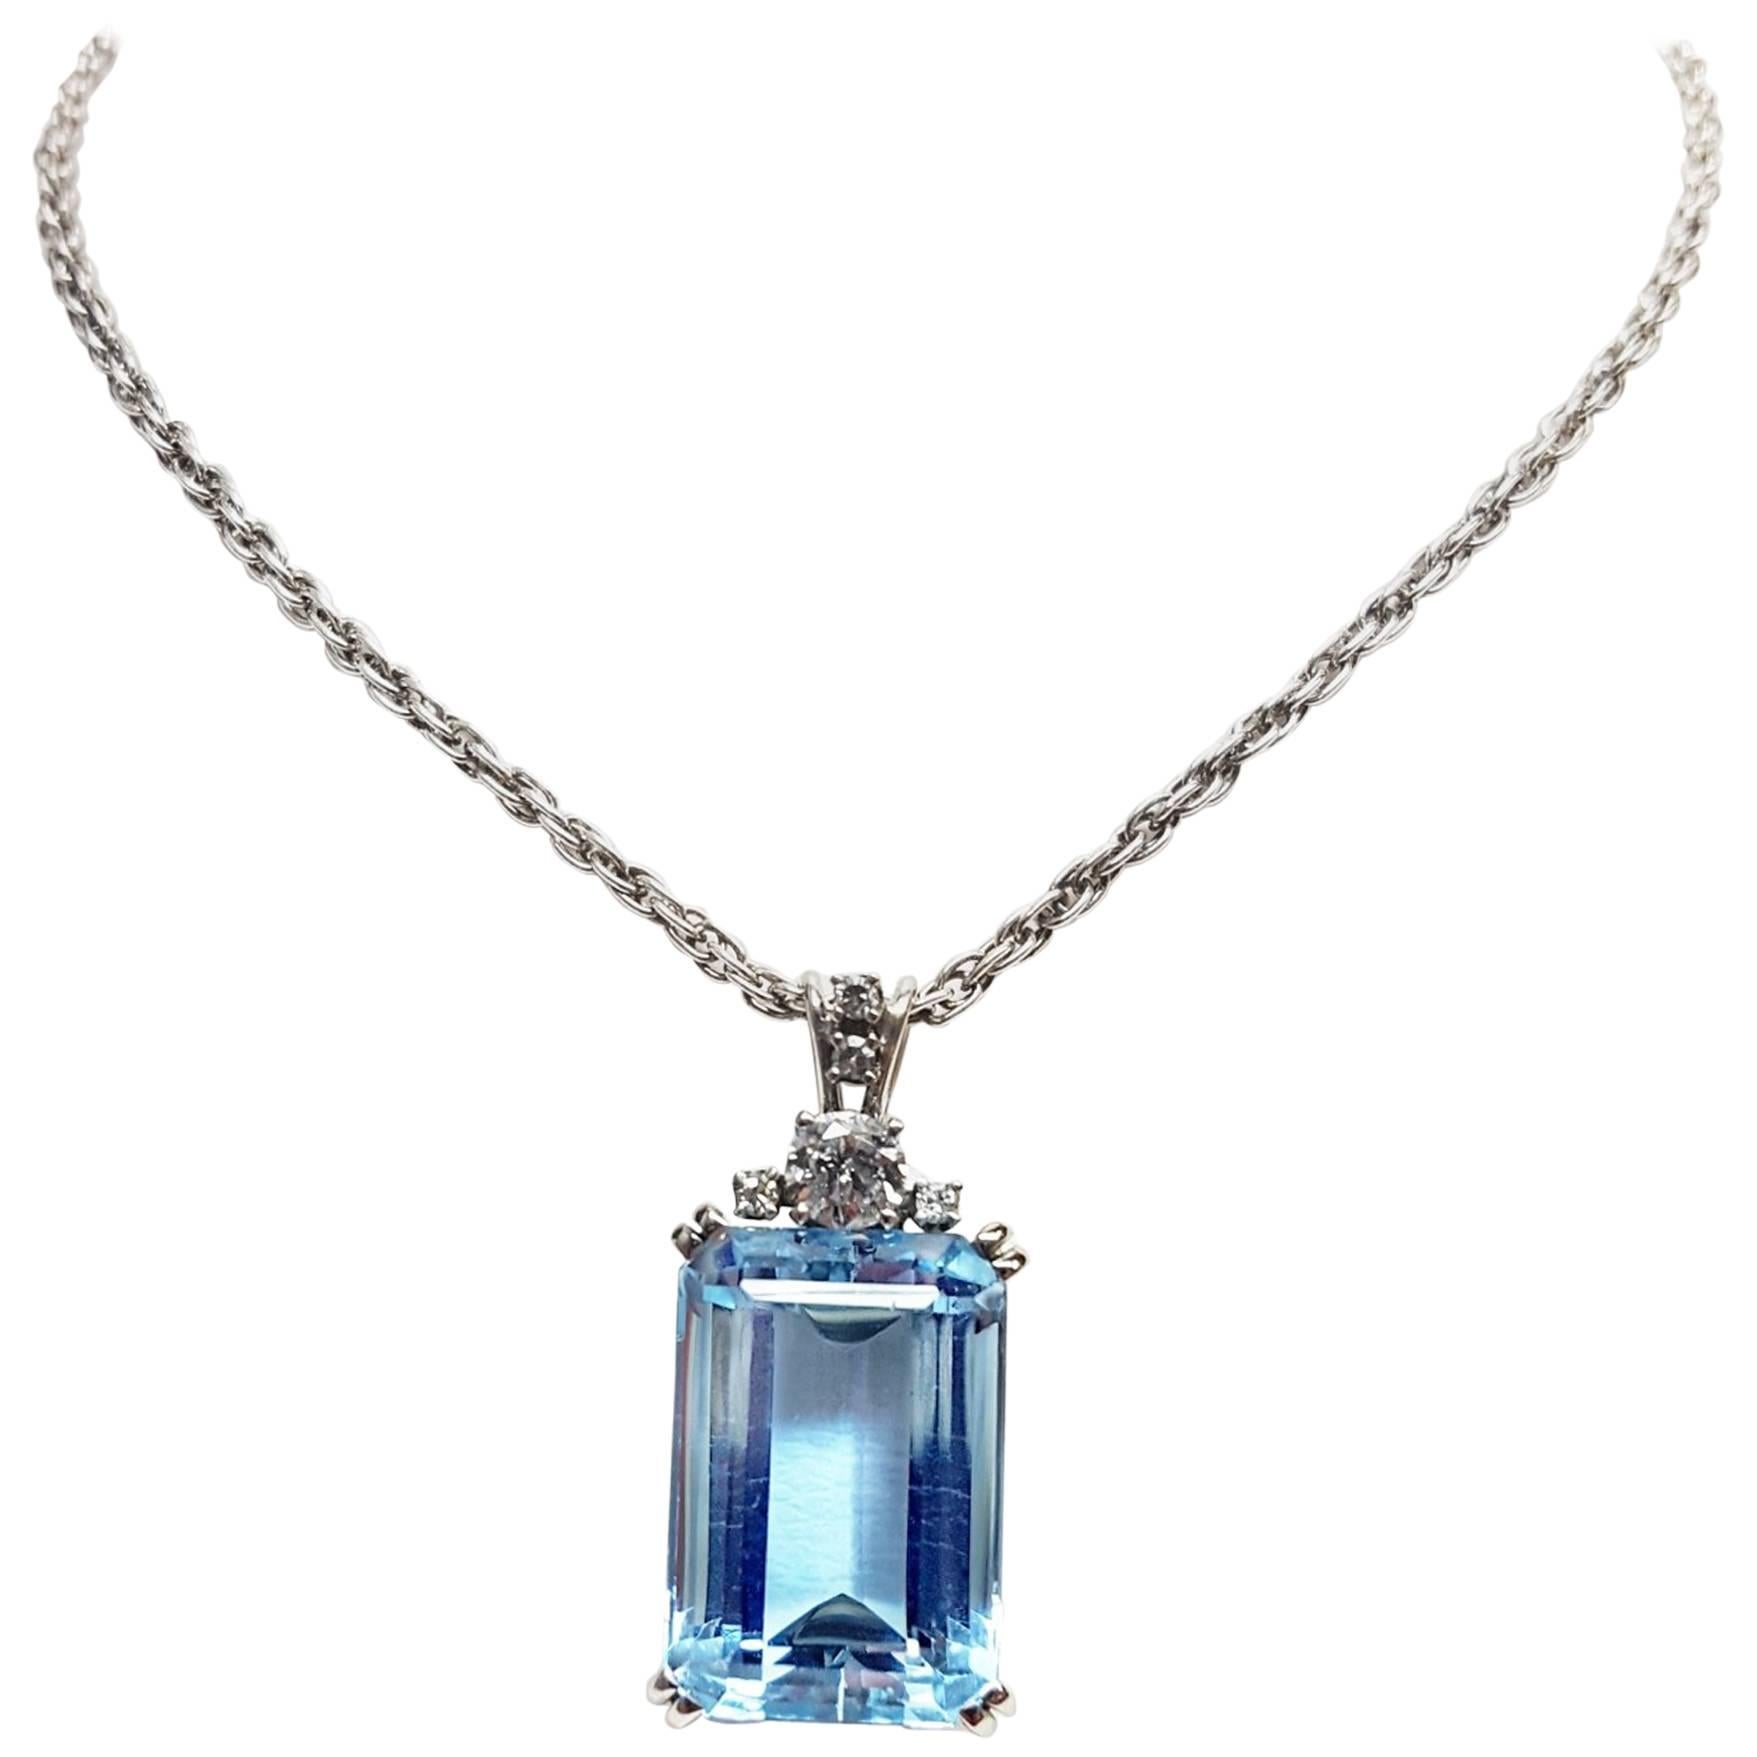 12 Carat Aquamarine Diamond Pendant